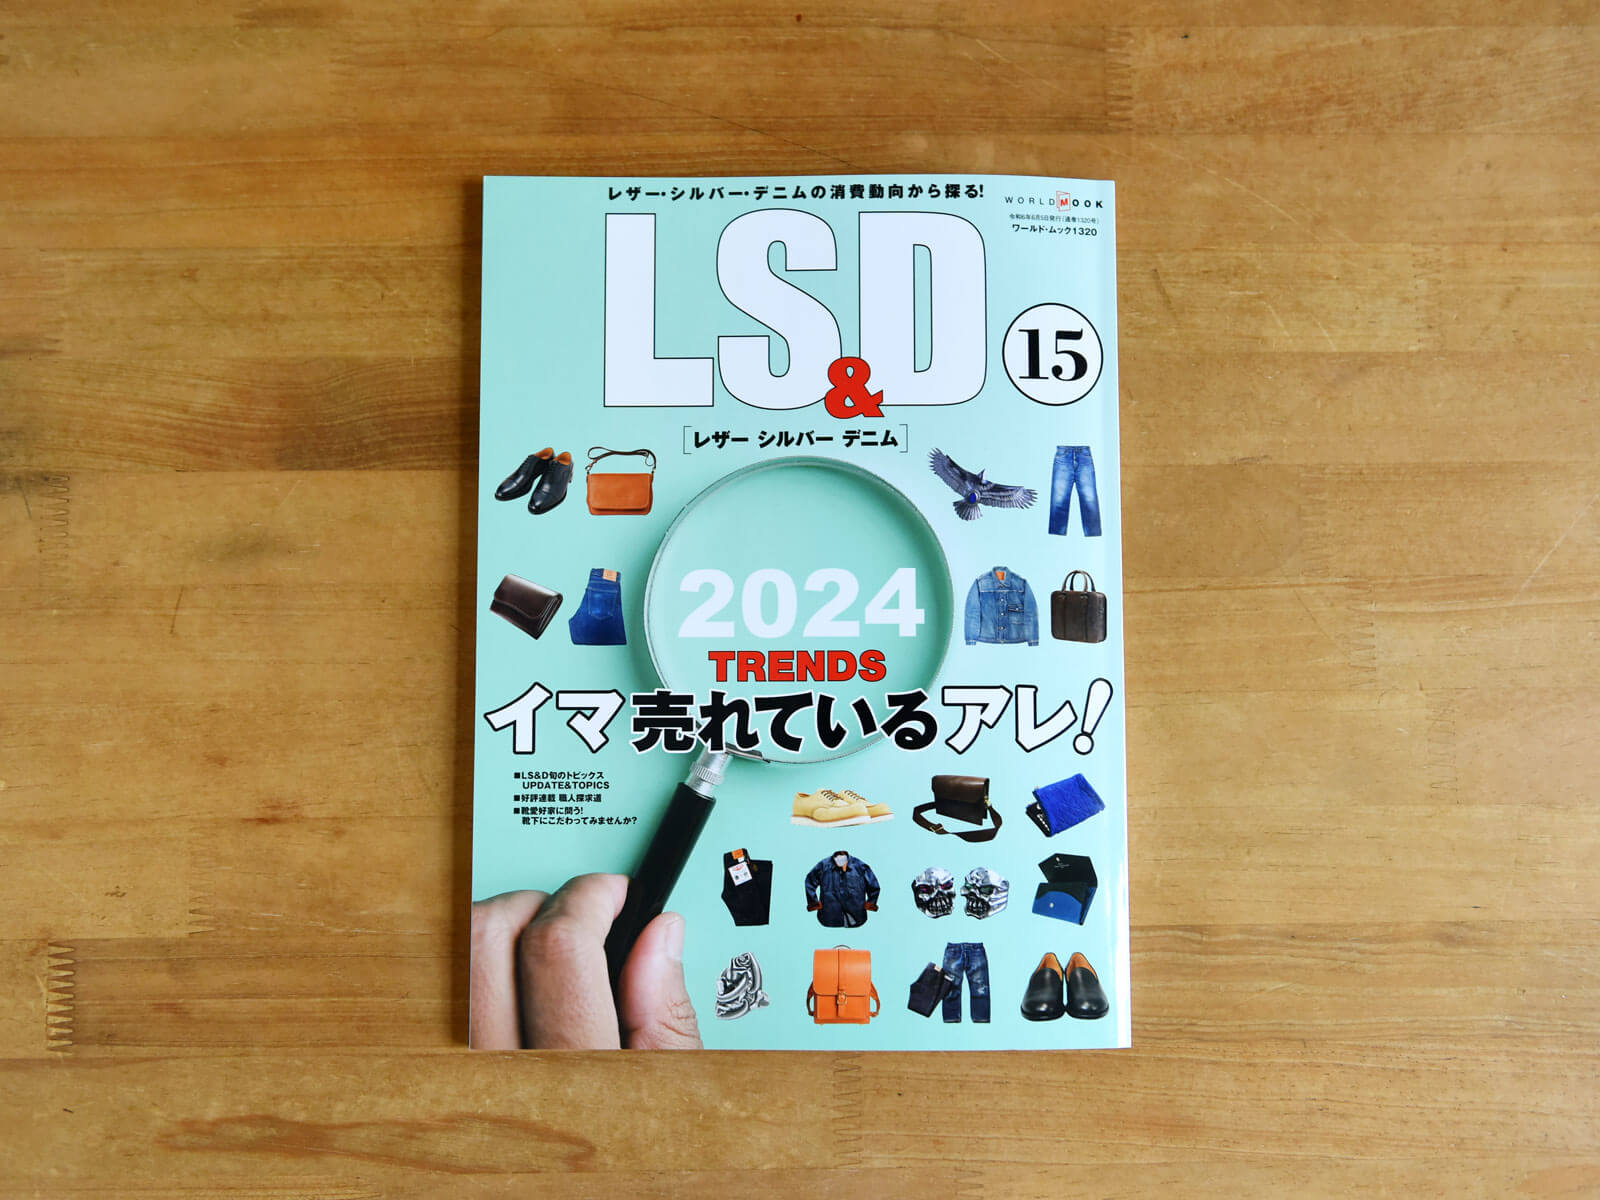 雑誌掲載のお知らせ「LS&D 15 レザー シルバー デニム」